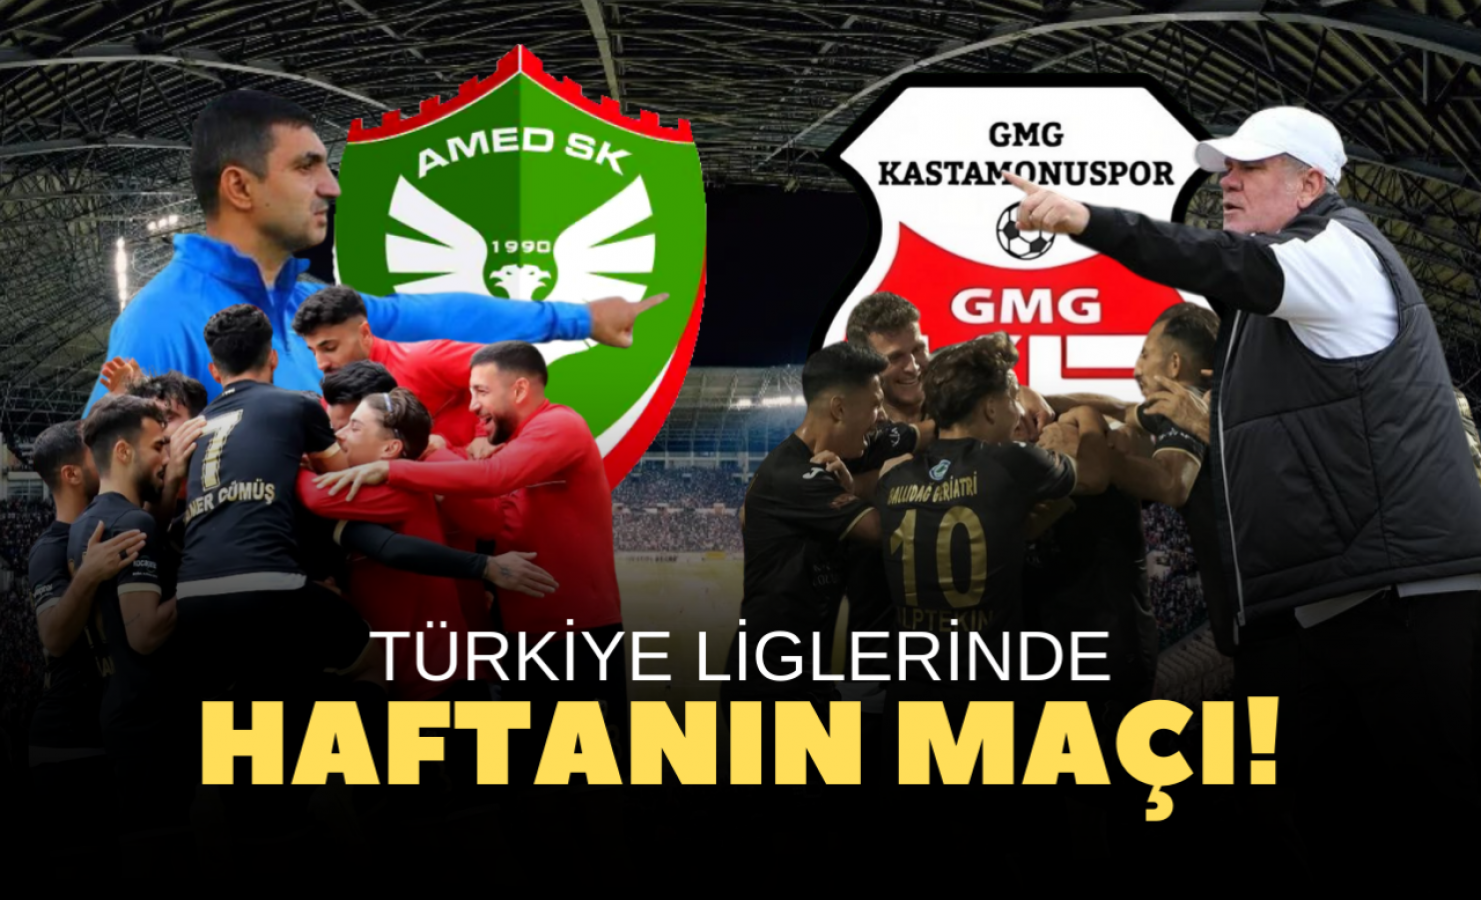 Türkiye'de haftanın maçı: Amedspor- GMG Kastamonuspor;